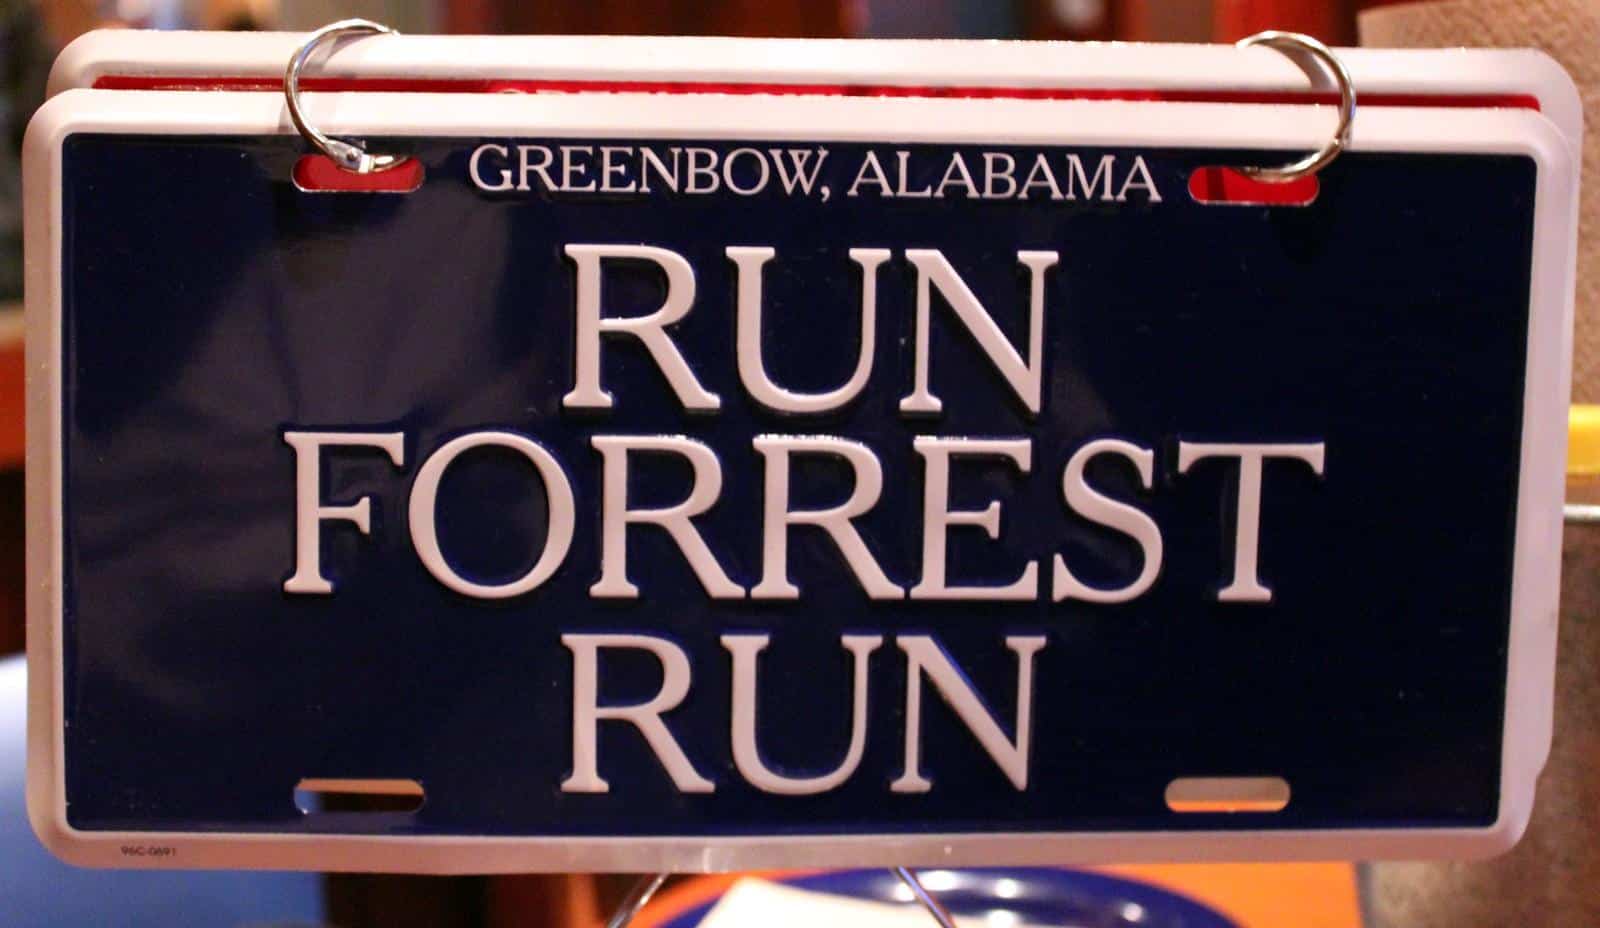 “Run Forrest Run” written on a signboard